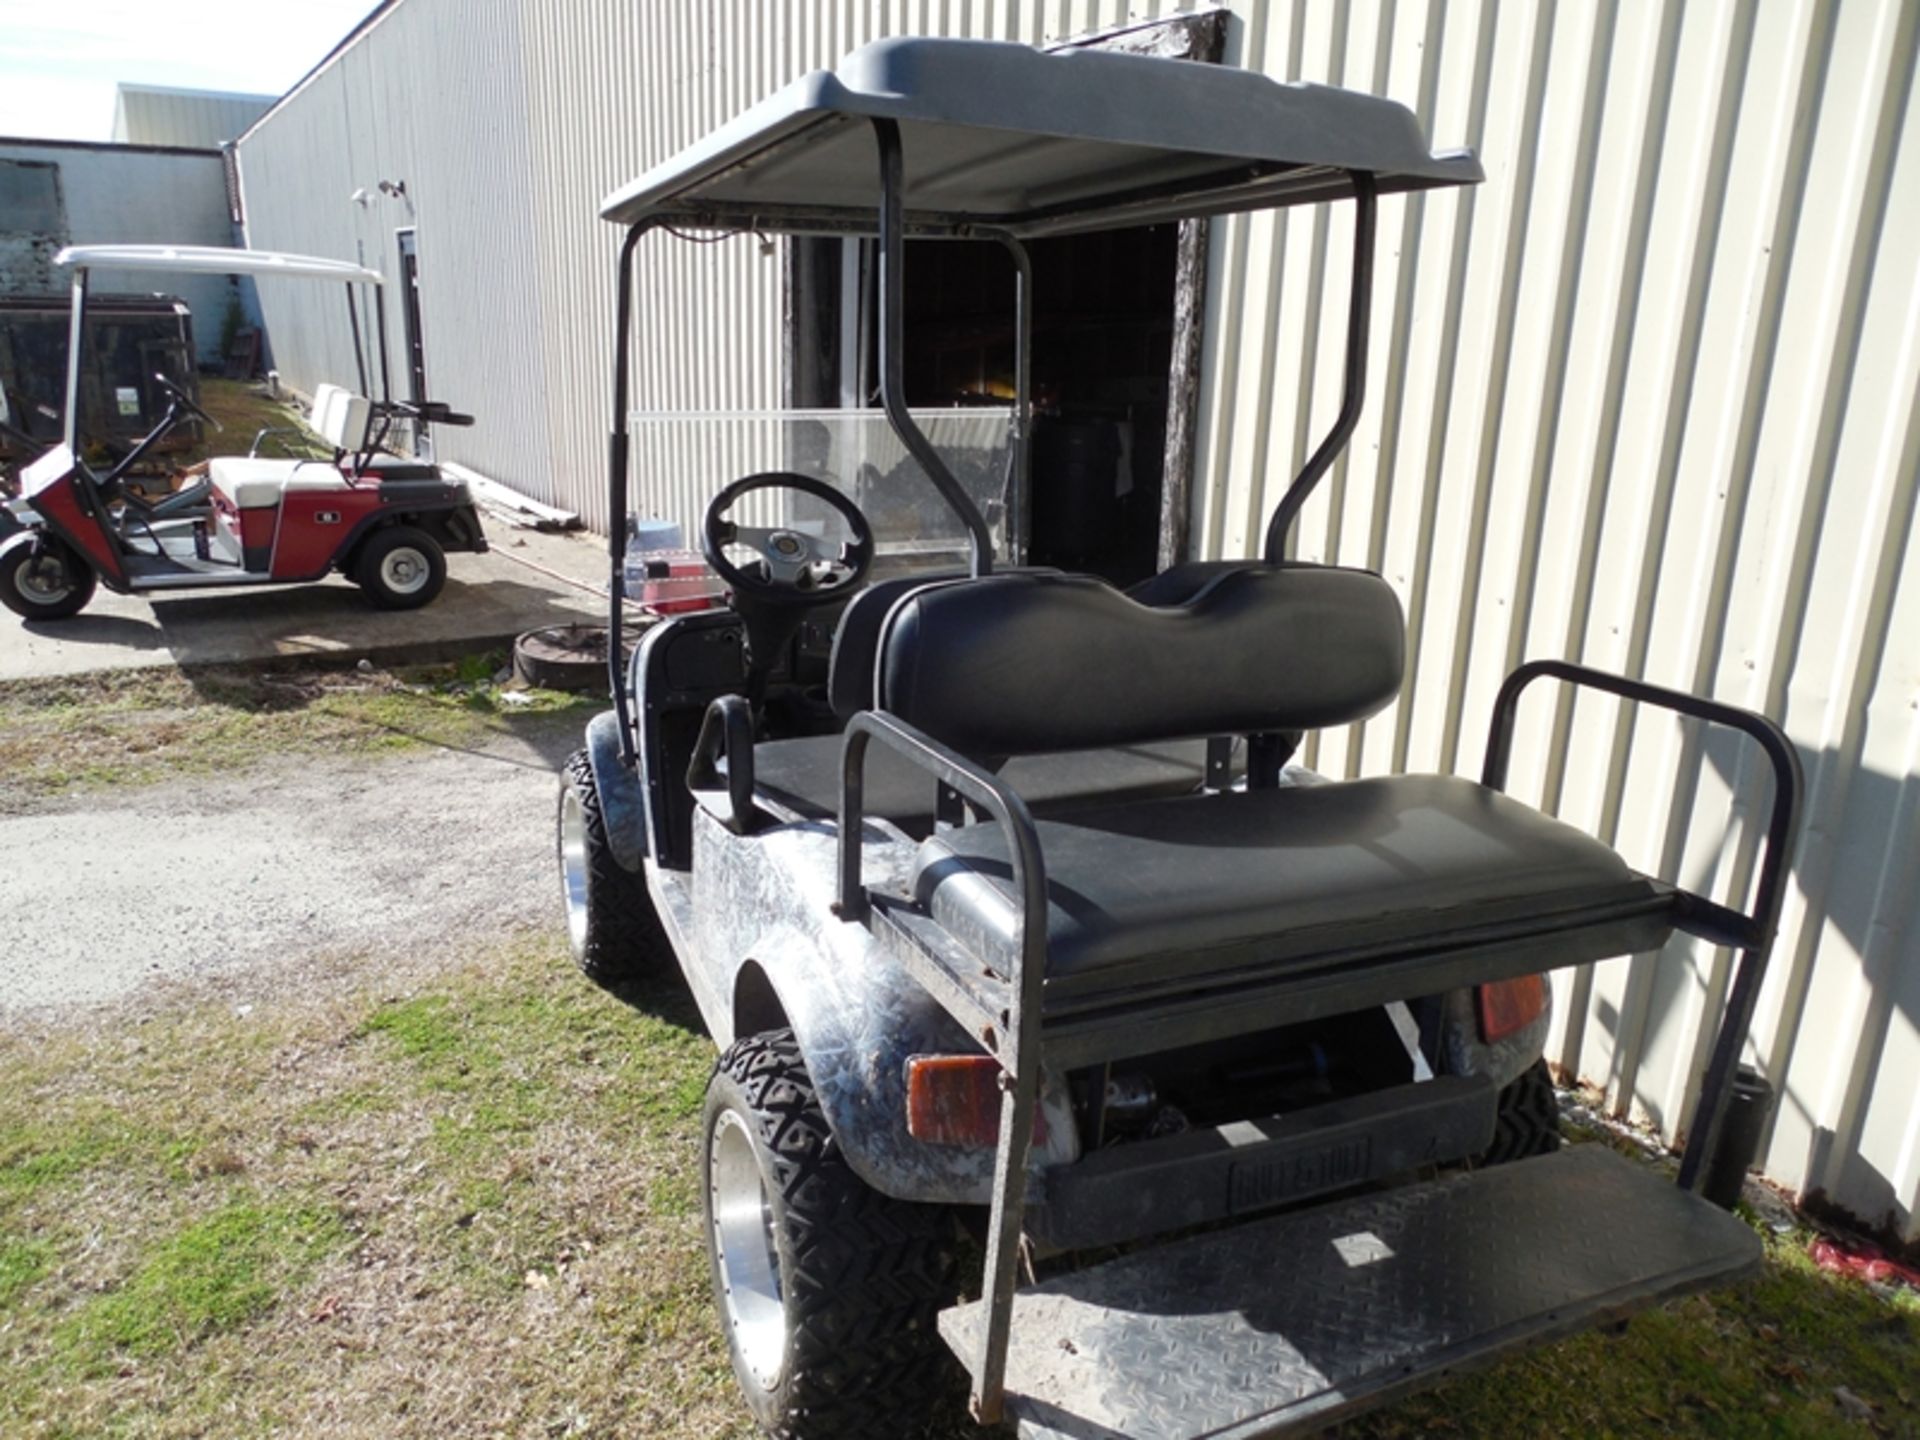 Ruff Tufff electric golf cart camo lift kit on board charger lift kit on board charger - Image 3 of 3